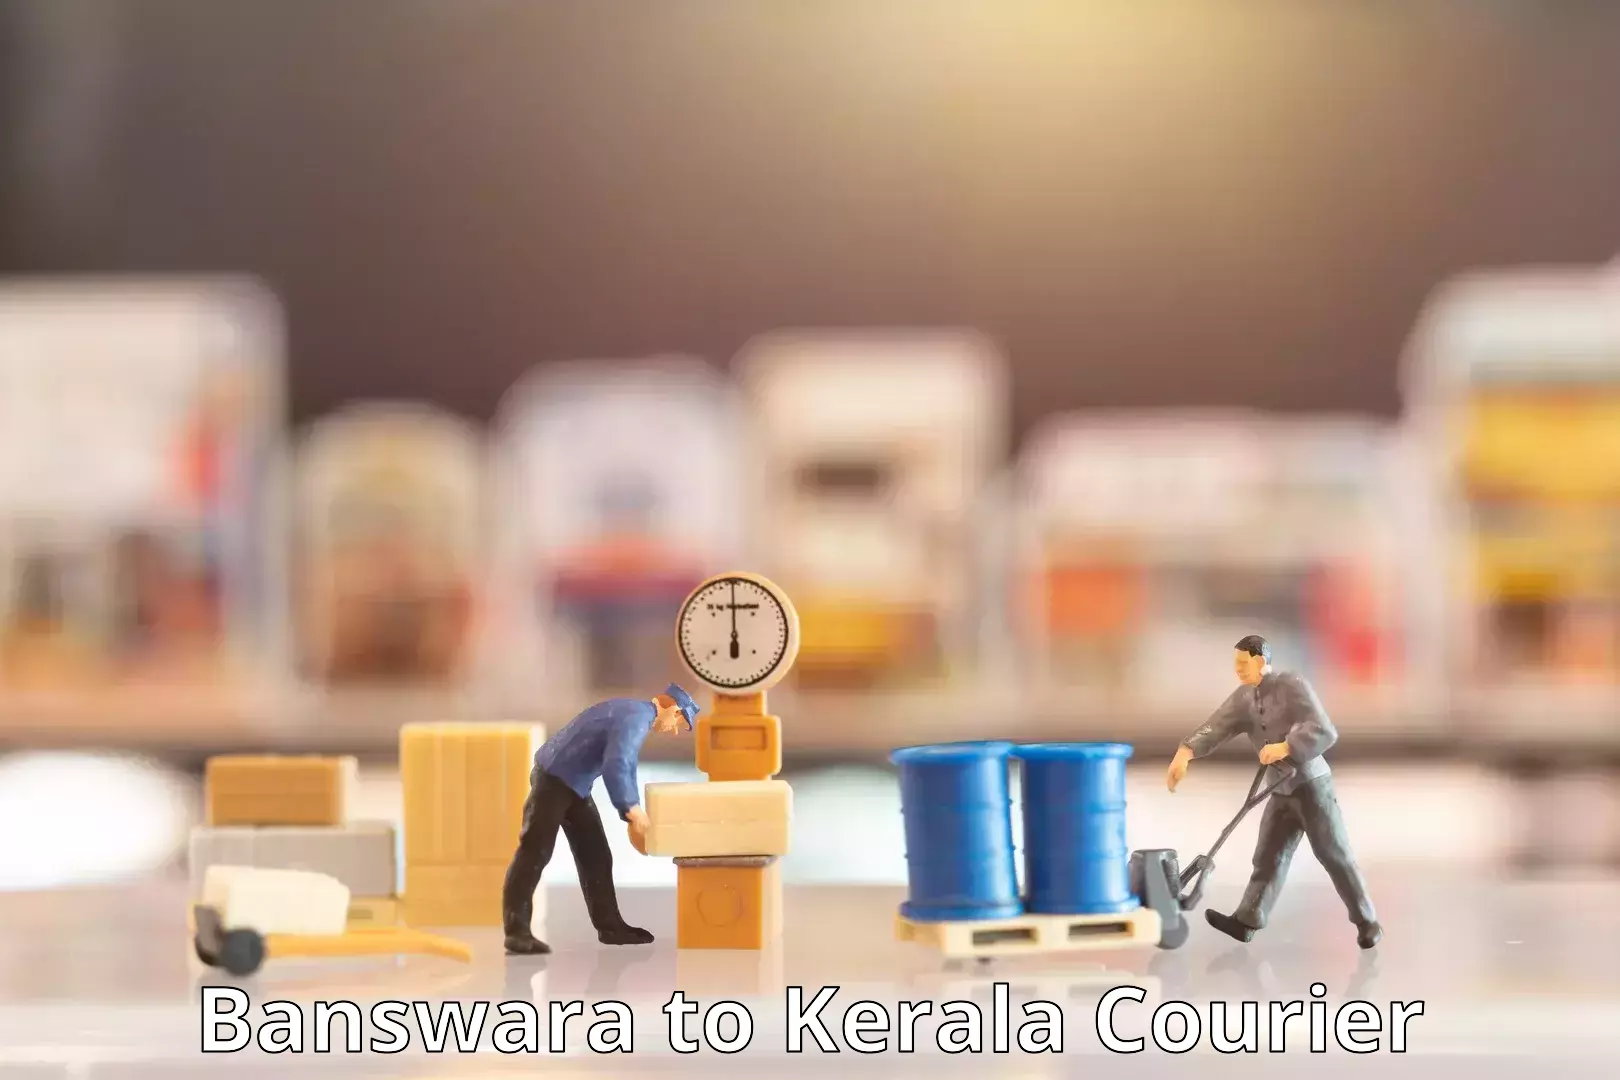 Express delivery capabilities Banswara to Kerala